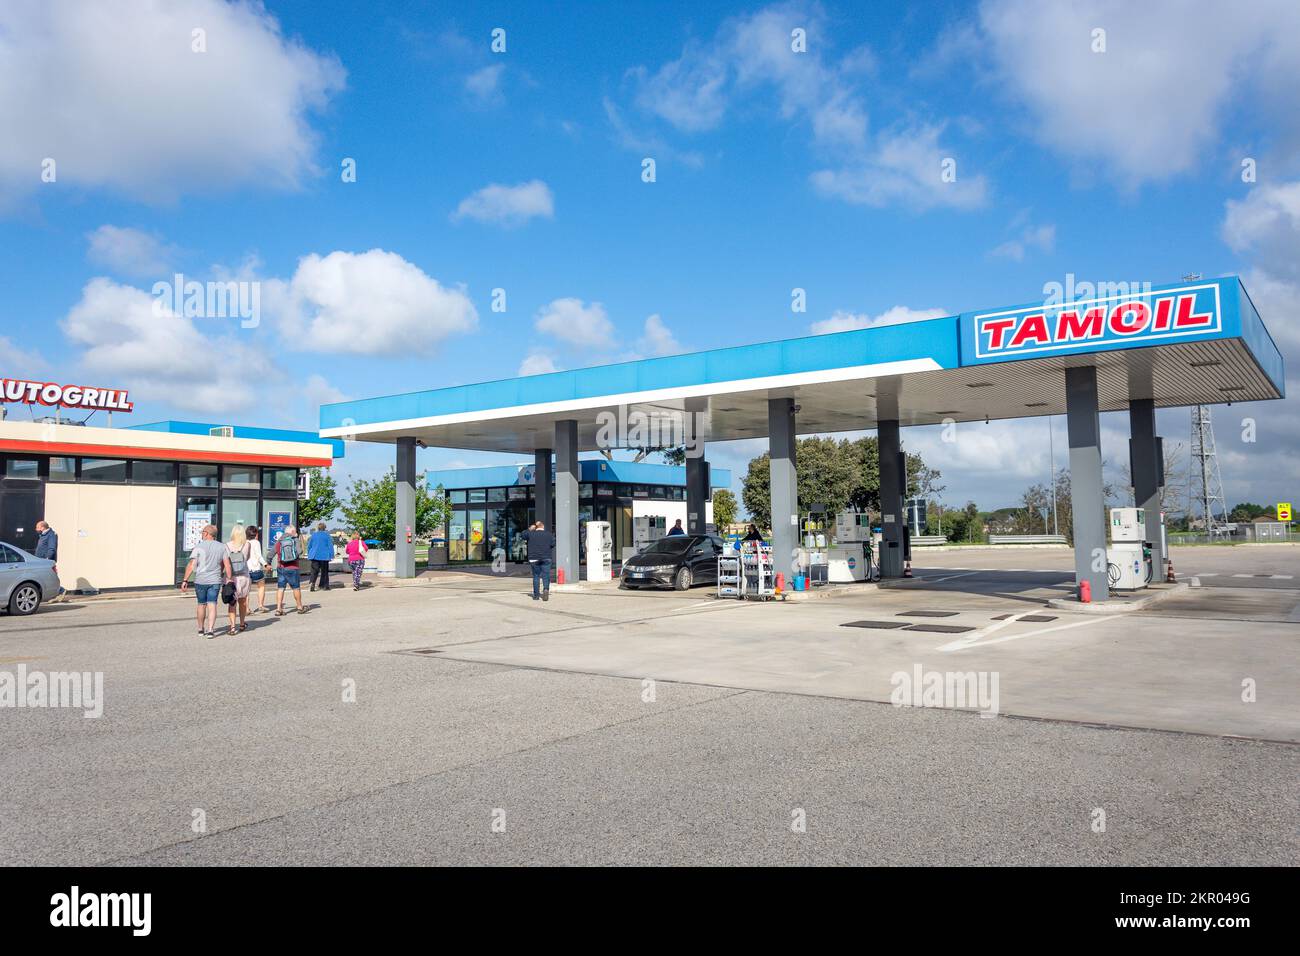 Tamoil petrol station immagini e fotografie stock ad alta risoluzione -  Alamy